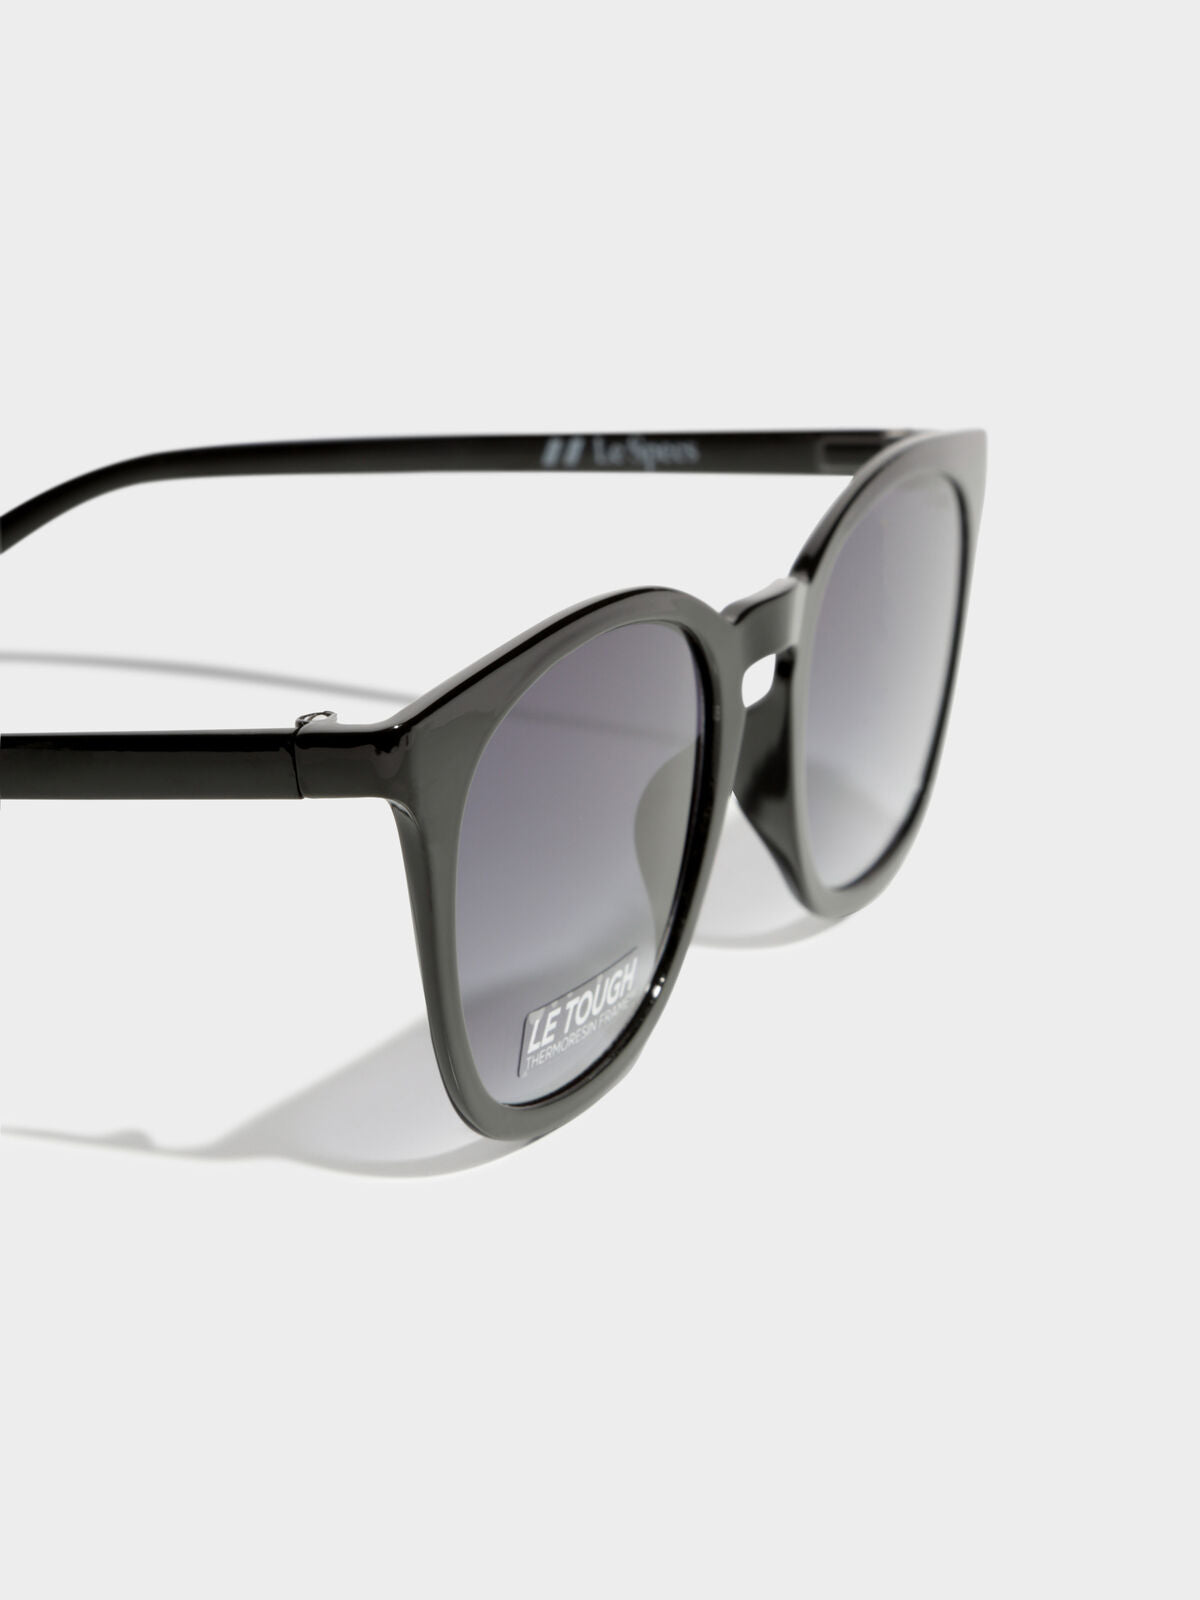 Fine Specimen Sunglasses in Black Mono